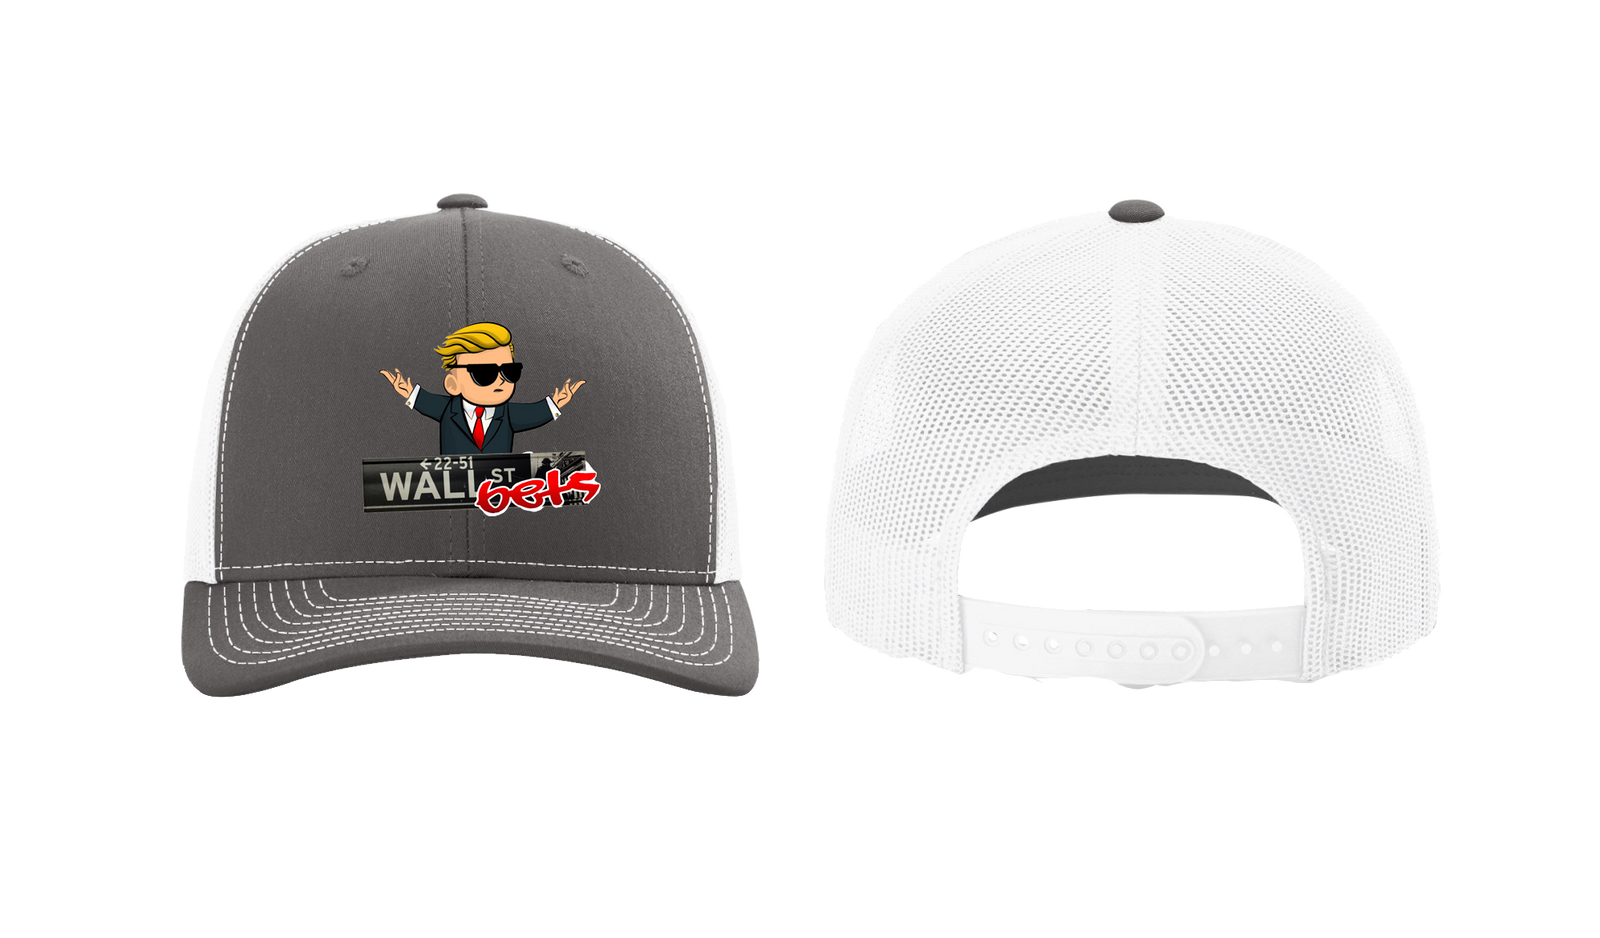 Wall Street Bets Trucker Hat